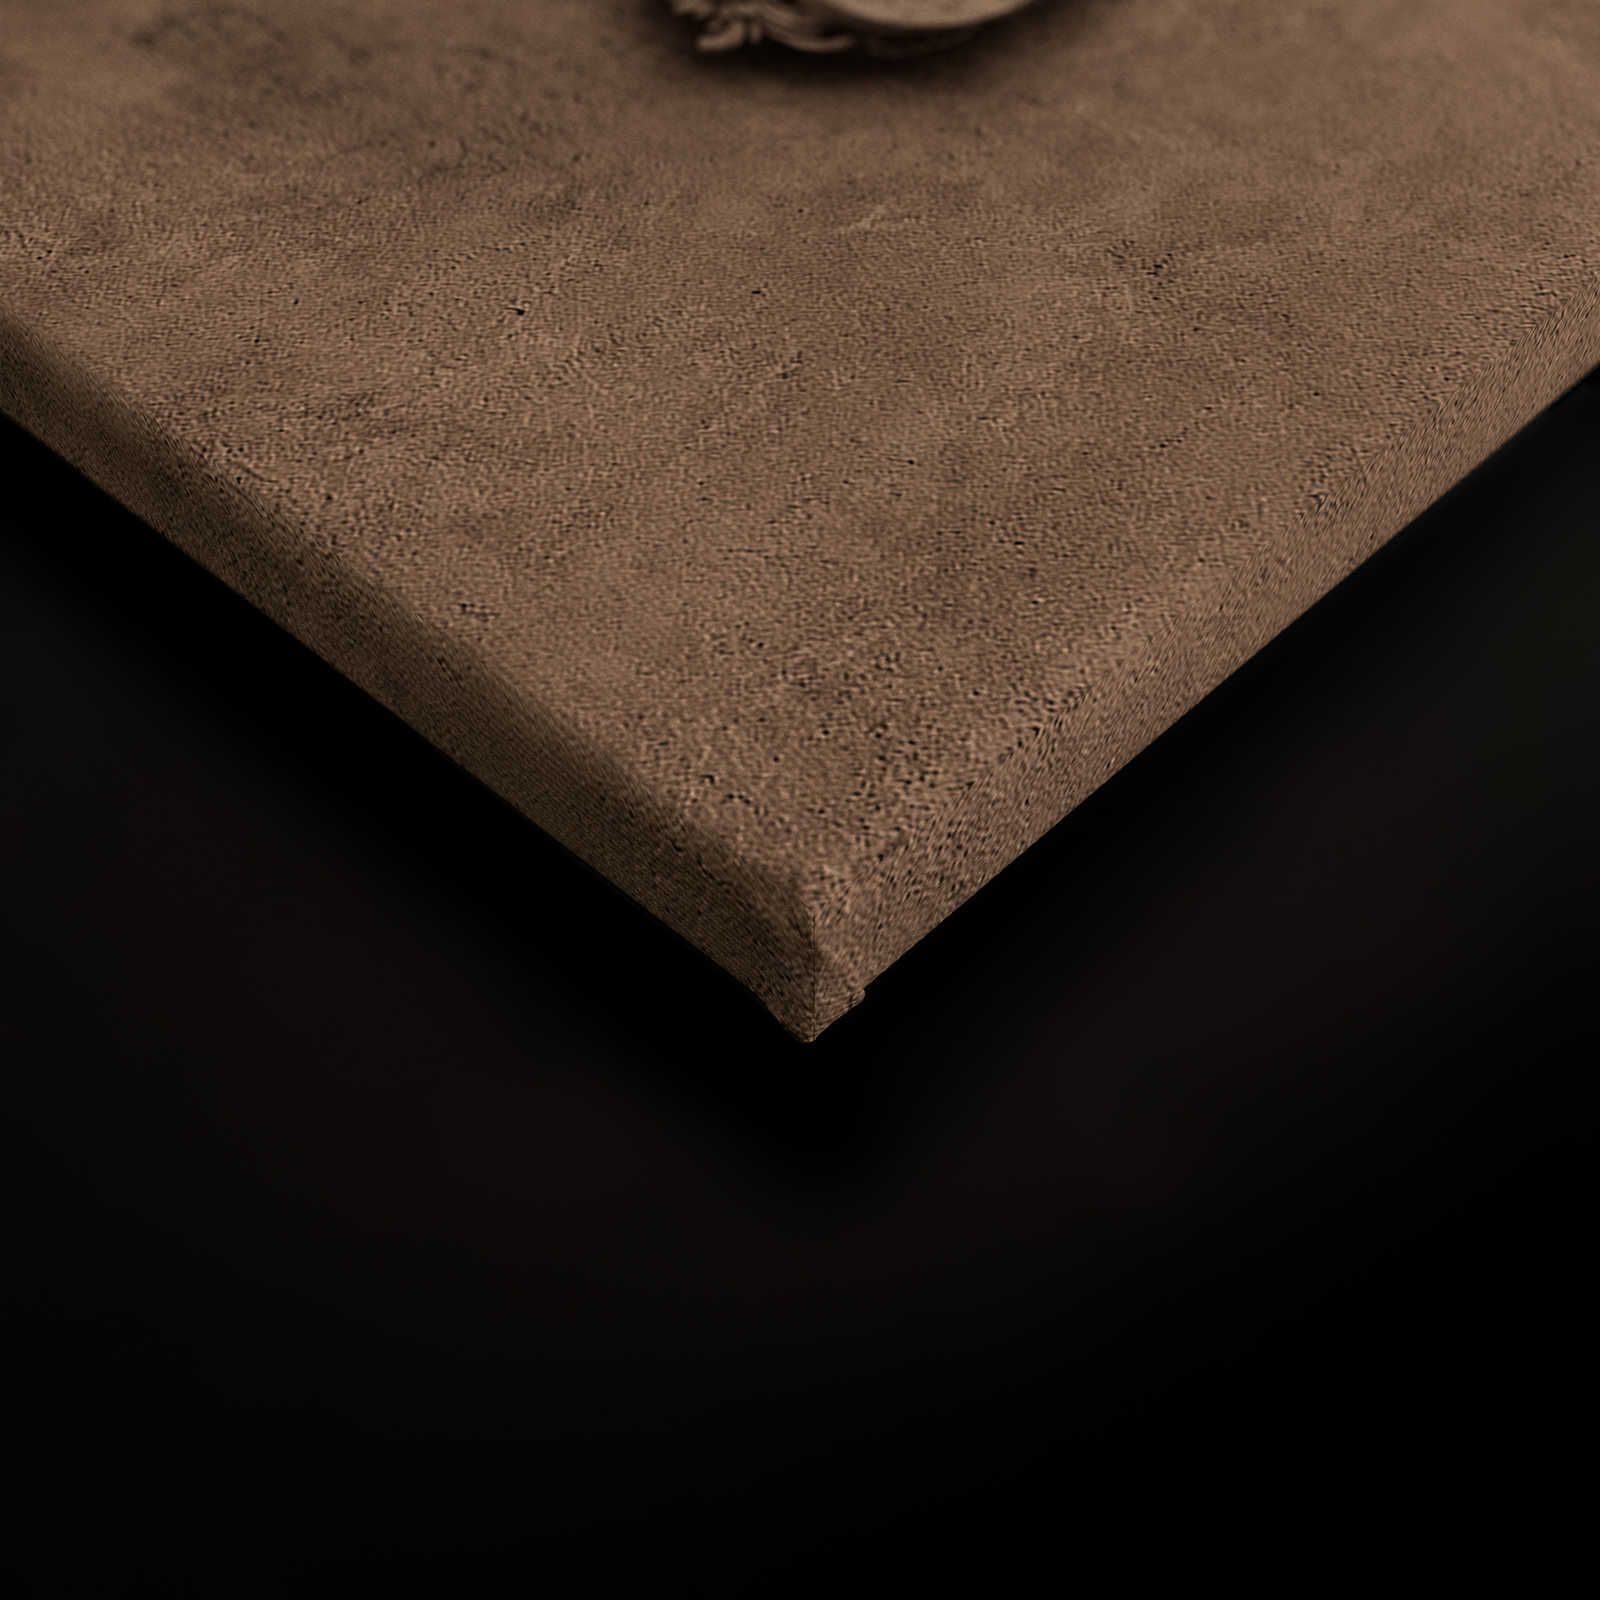             Lyon 1 - Toile 3D cadre stuc & aspect plâtre marron - 0,90 m x 0,60 m
        